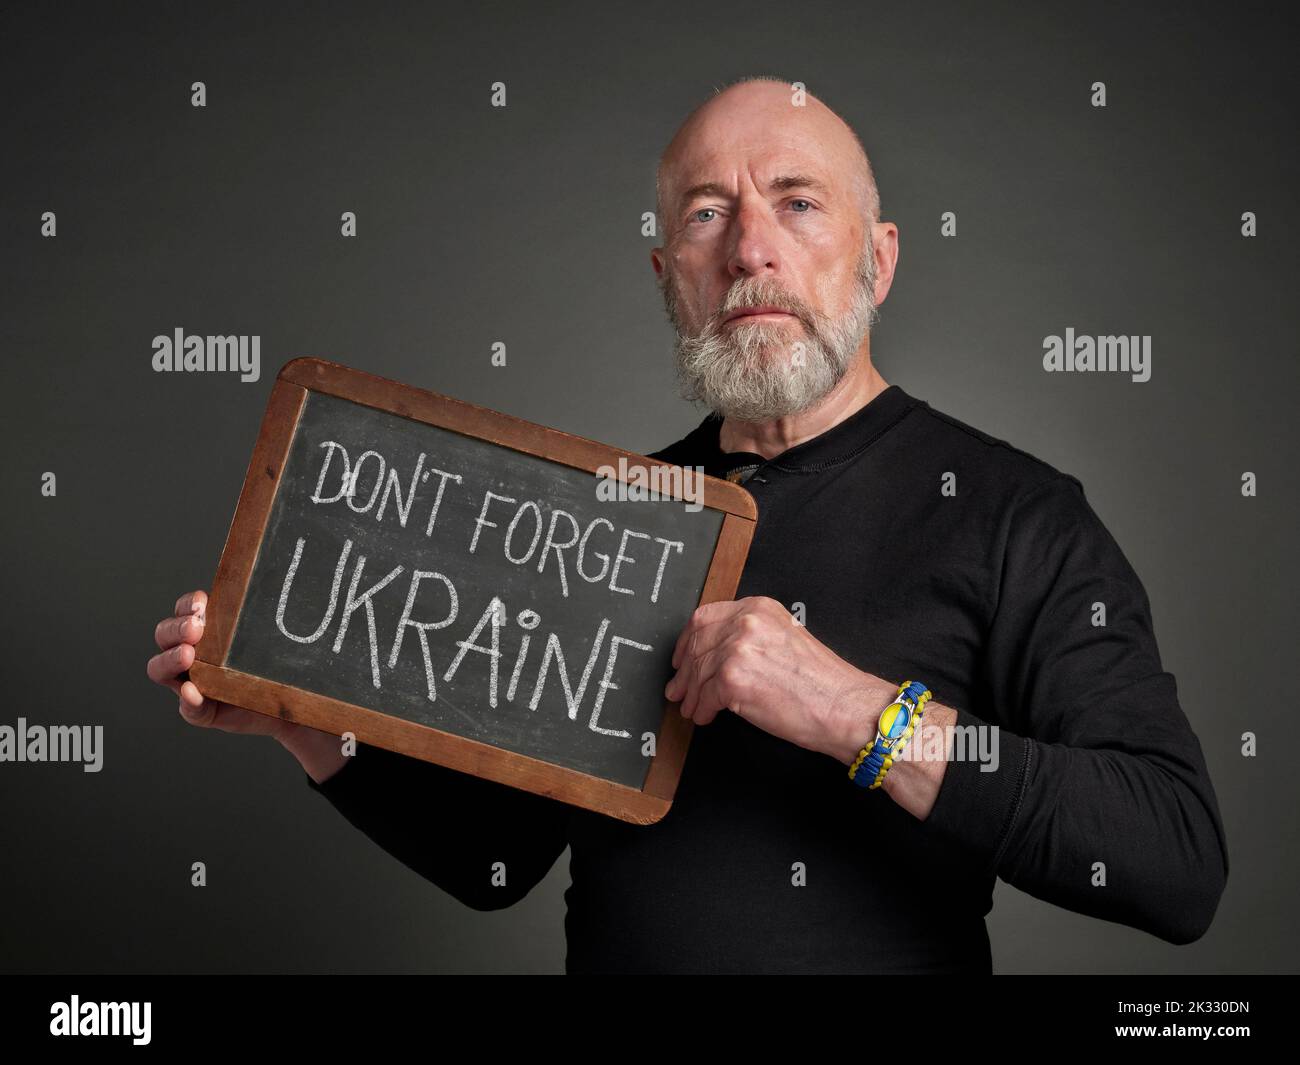 No se olvide de Ucrania - palabras en tiza blanca sobre una pizarra blanca sostenidas por un hombre mayor con pulsera azul y amarilla Foto de stock